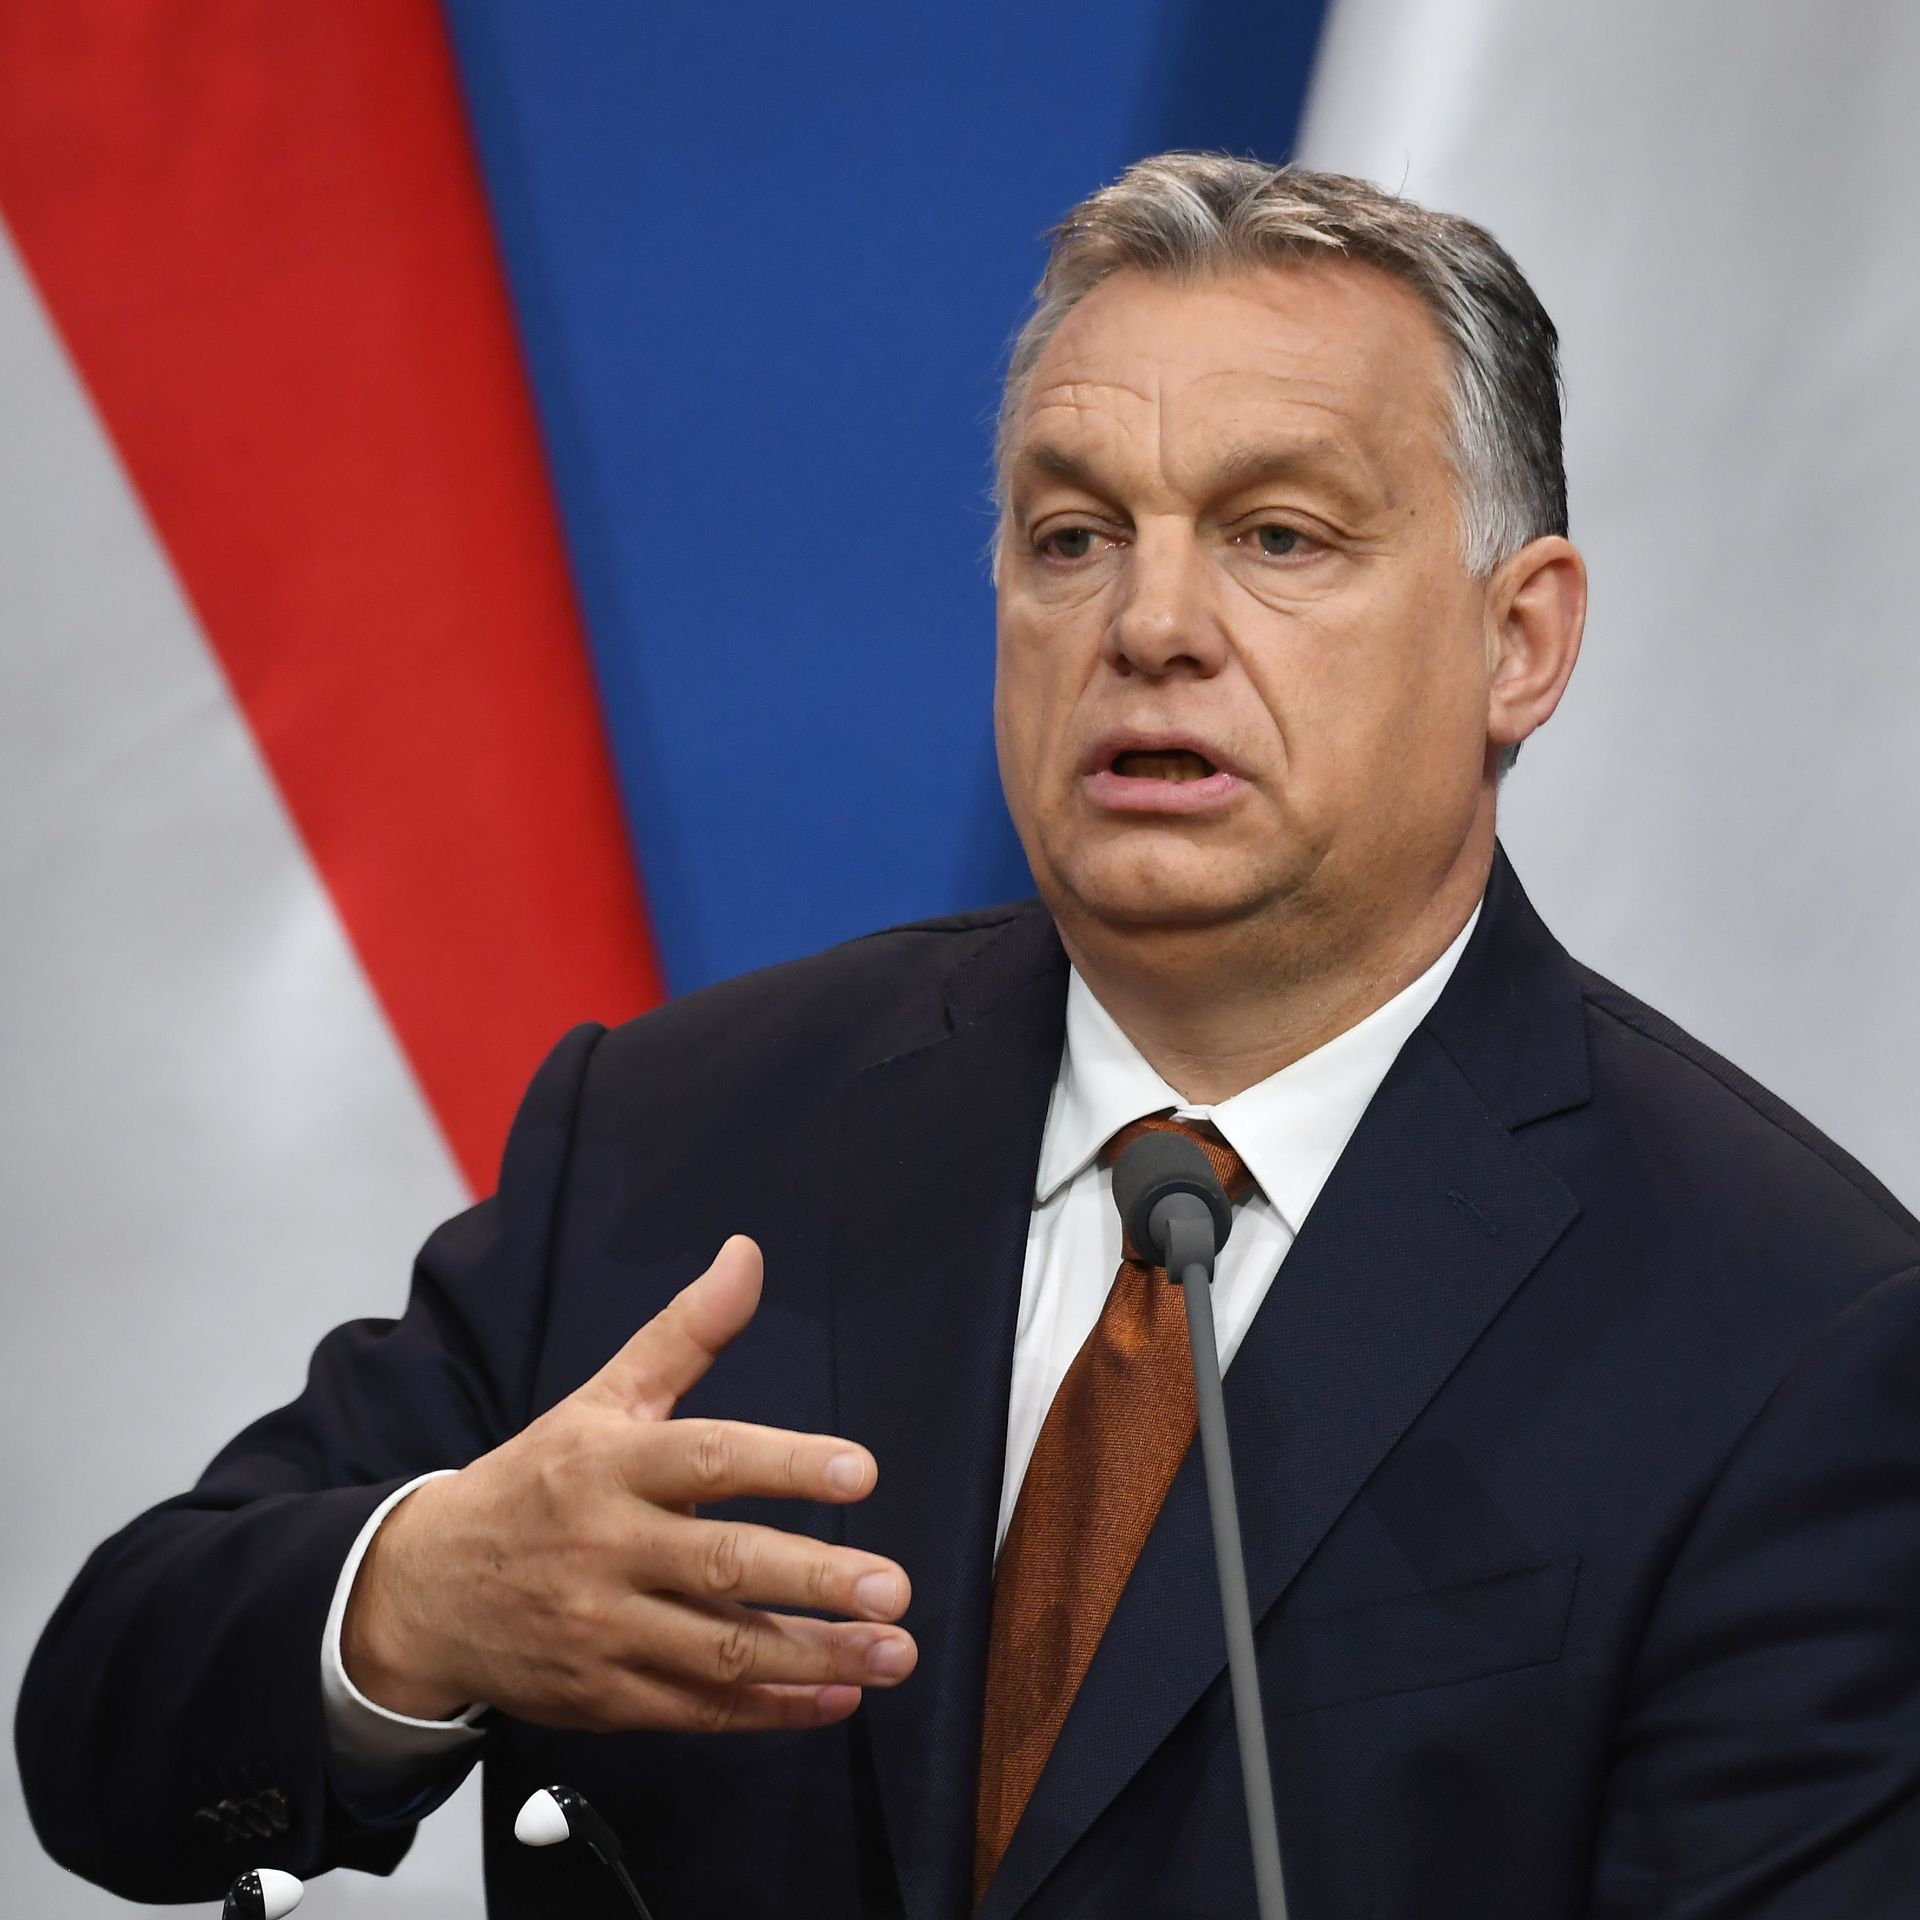 Viktor Orban speaking